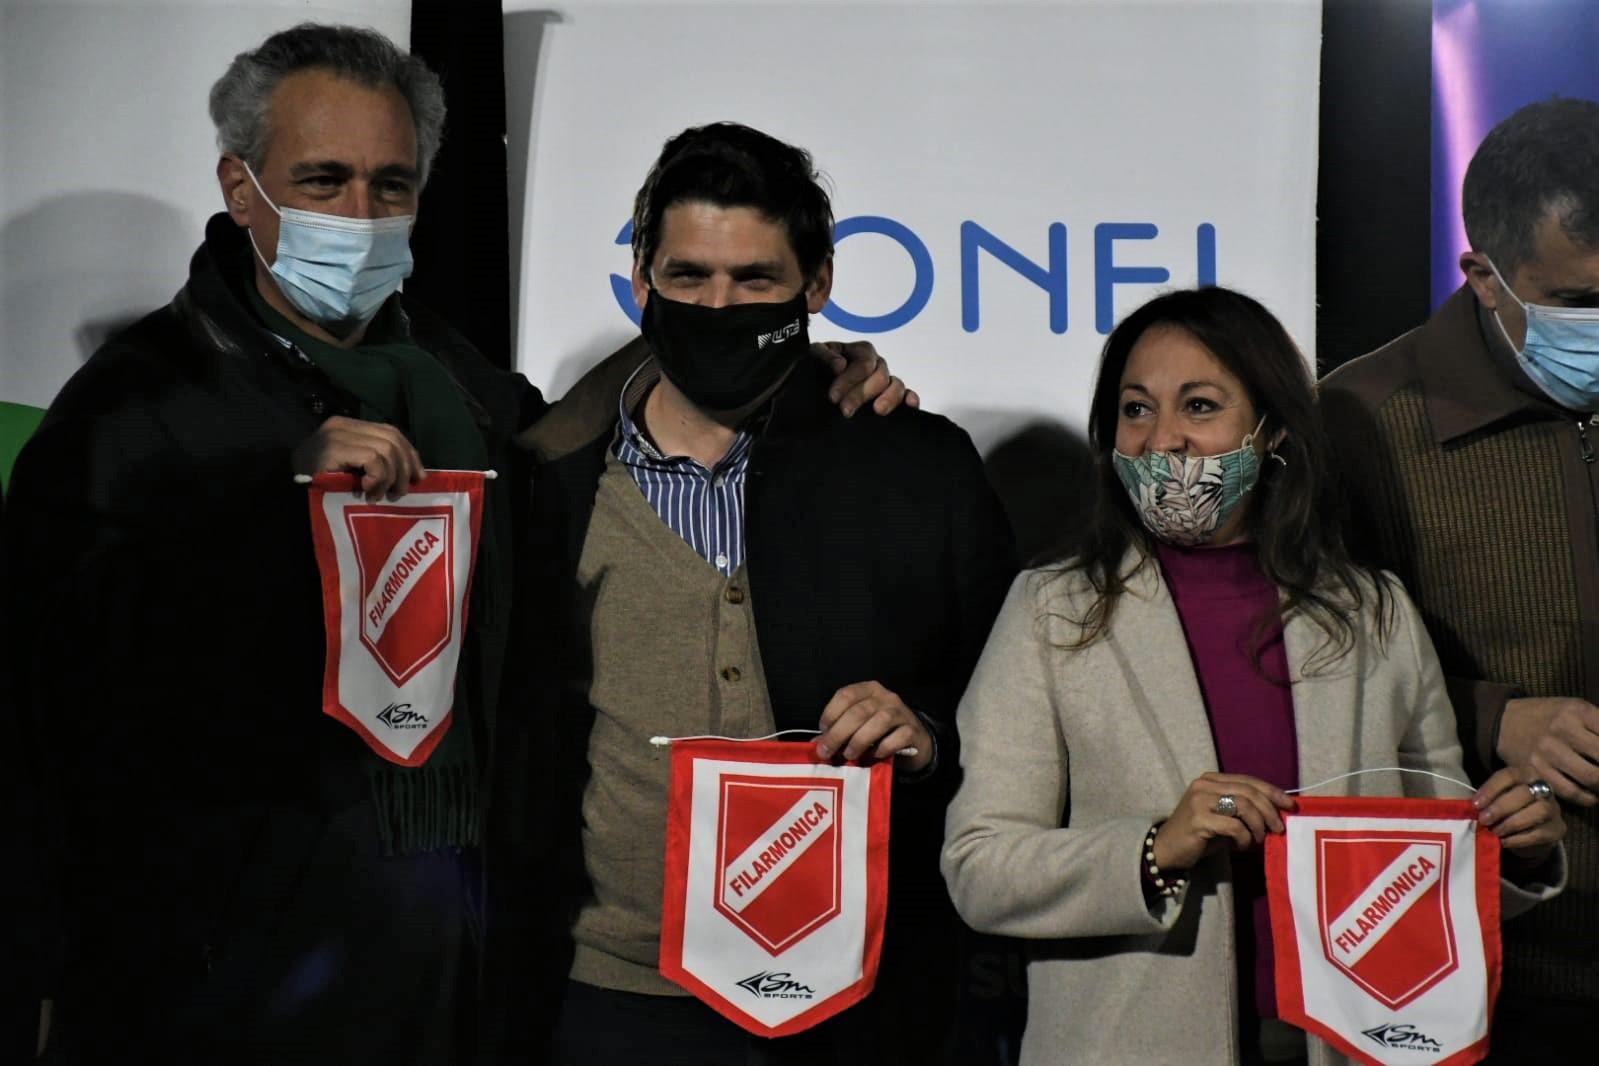 Directores de UTE Julio Luis Sanguinetti, Felipe Algorta y Fernanda Cardona con banderín obsequio del anfitrión